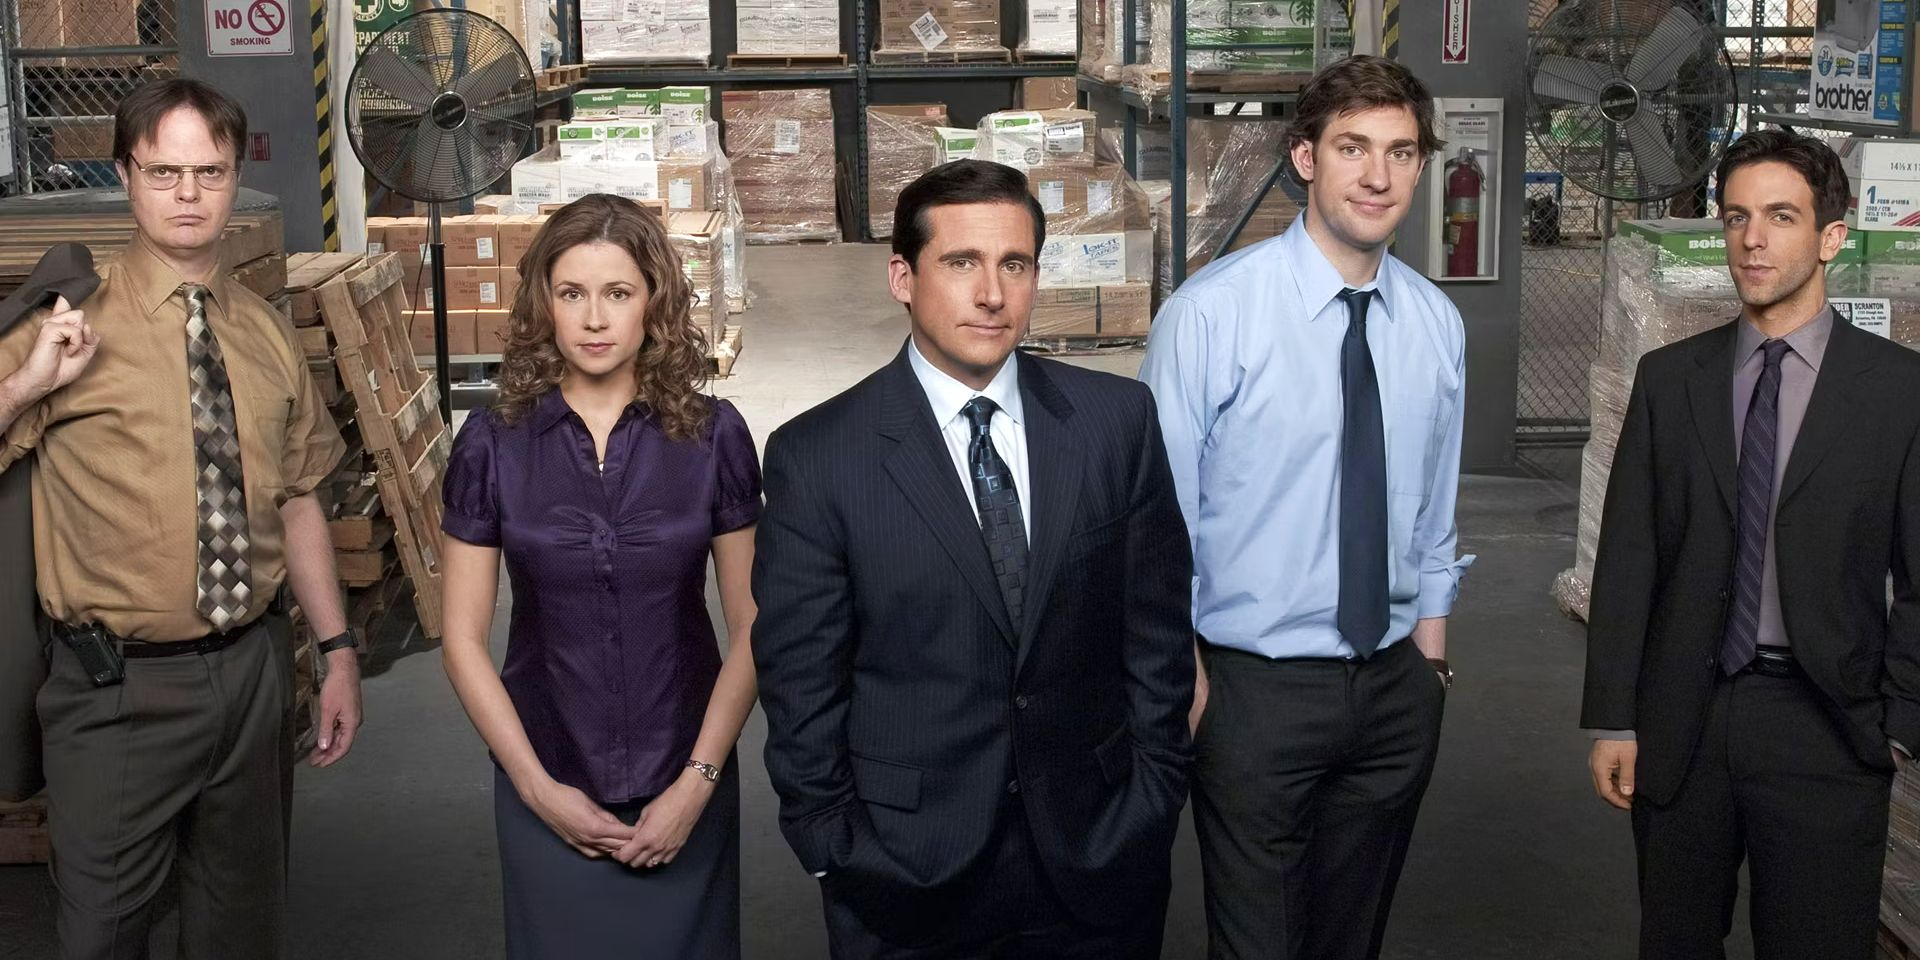 El elenco de personajes principales de Office: Dwight, Pam, Michael, Jim, Ryan.